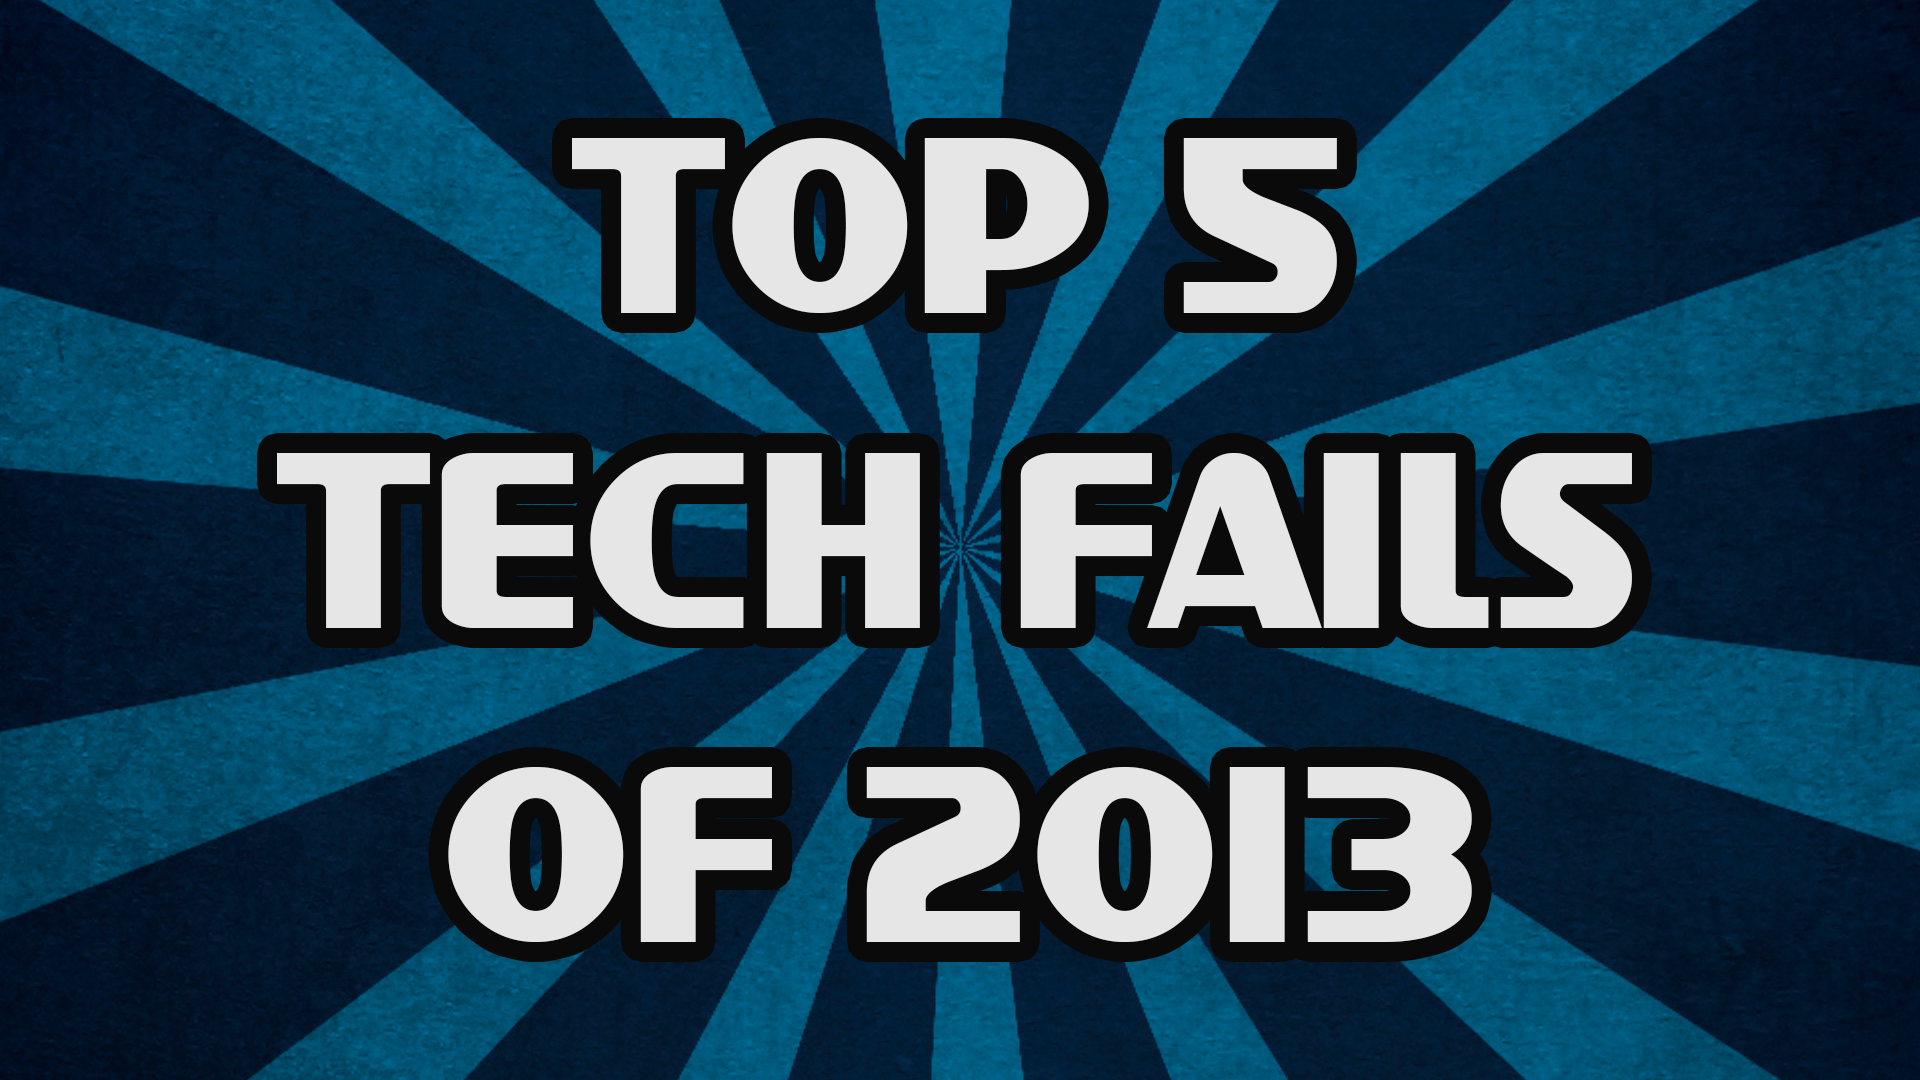 Top 5 Tech Fails of 2013